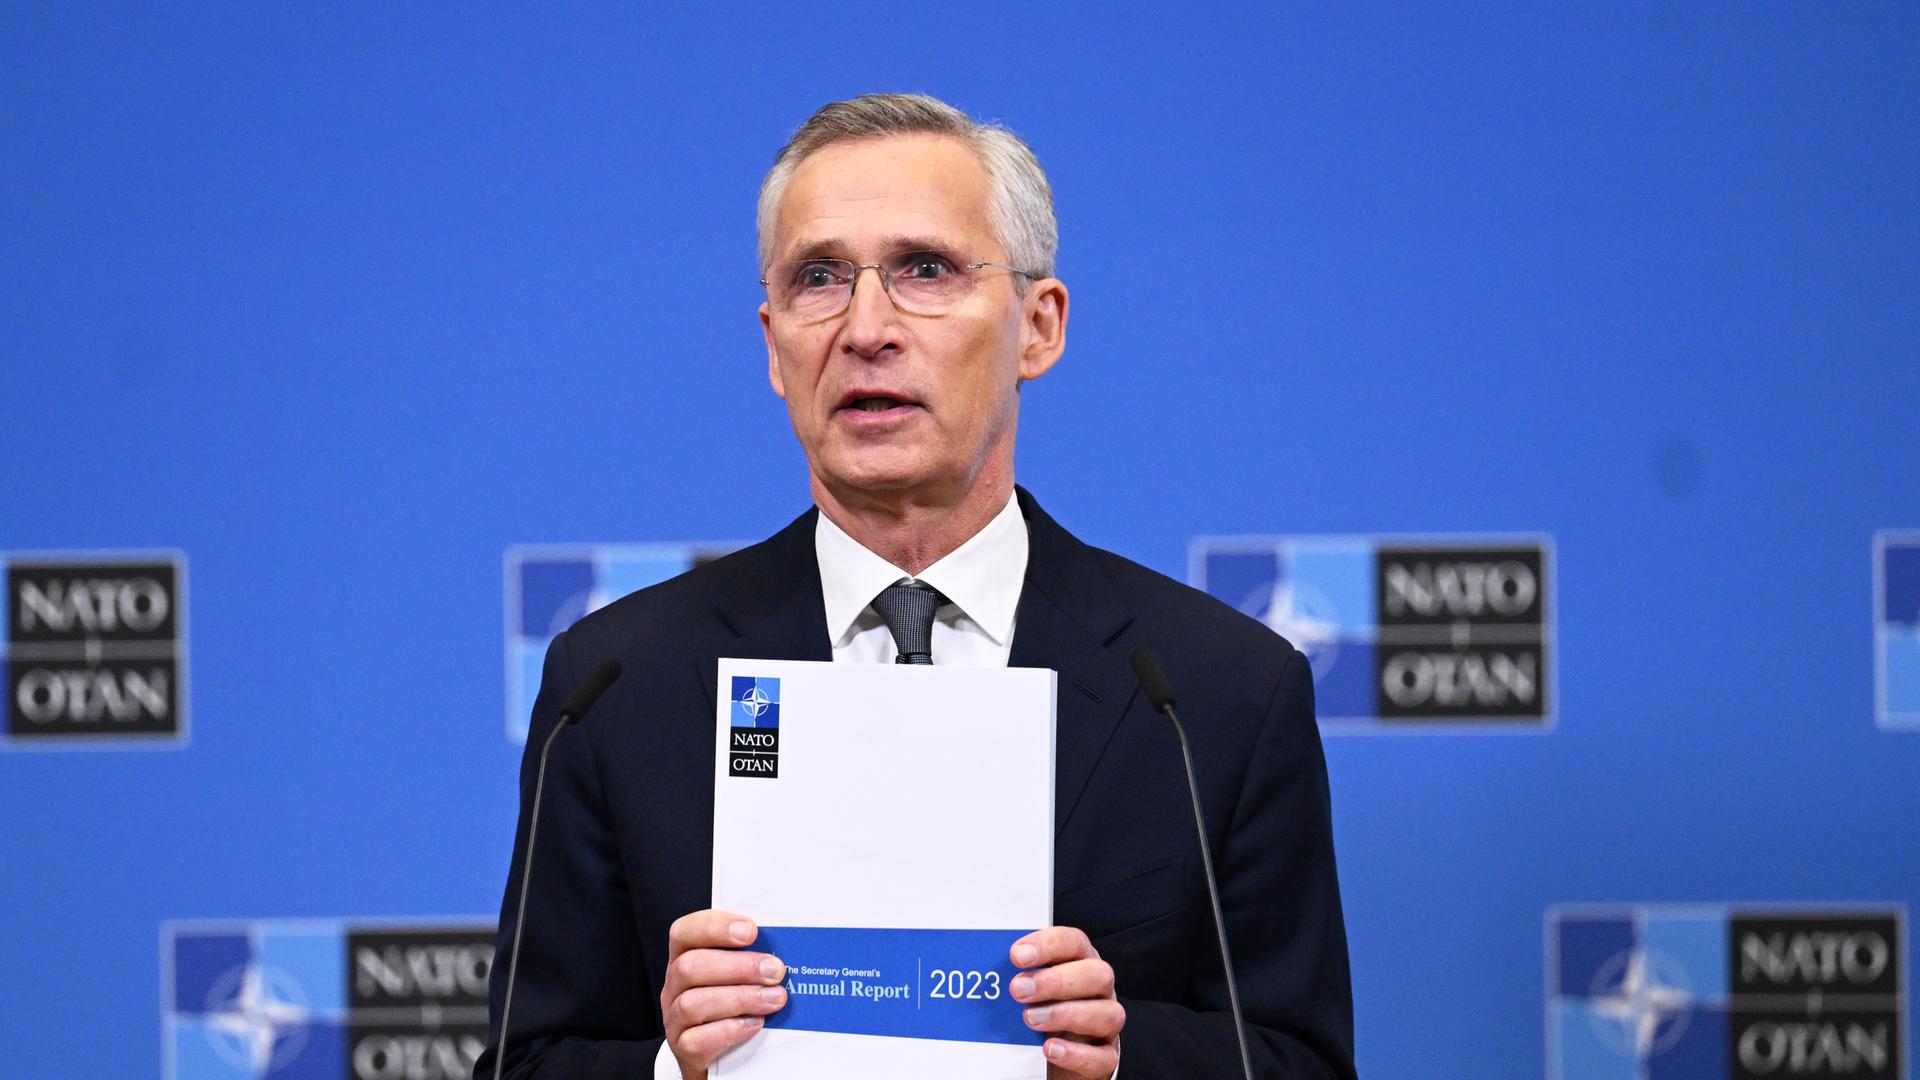 Jens Stoltenberg präsentiert bei einer Pressekonferenz den NATO-Jahresbericht 2023.